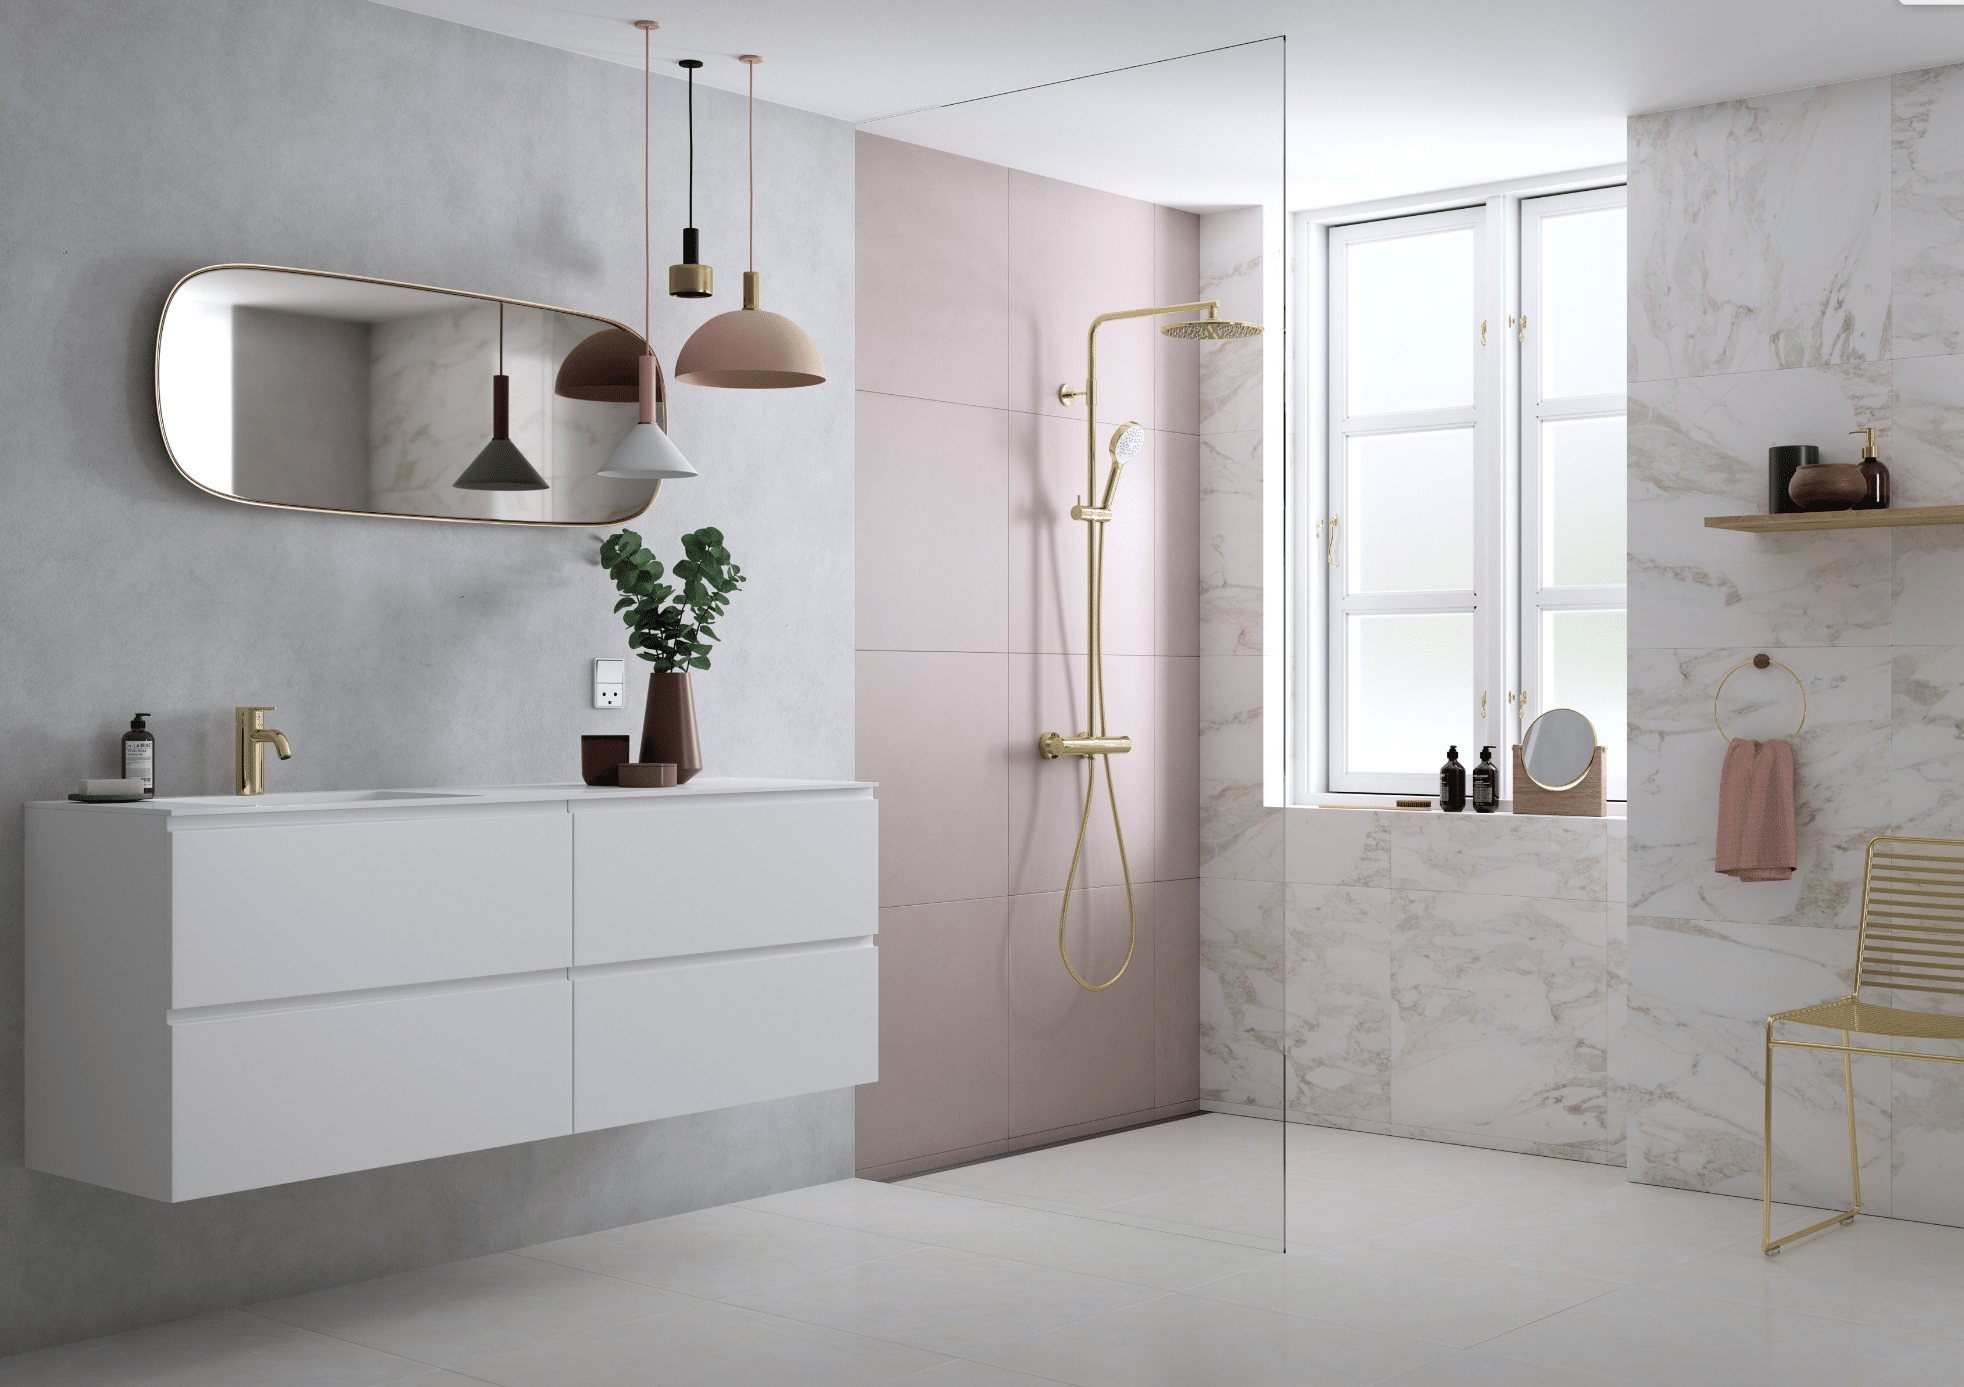 Fliesendorf zeigt ein Badezimmer mit hellen, marmorierten Fliesen an der Wand und rosa gefliester, offener Dusche mit Glaswand und weissem Waschtisch mit Kommode.